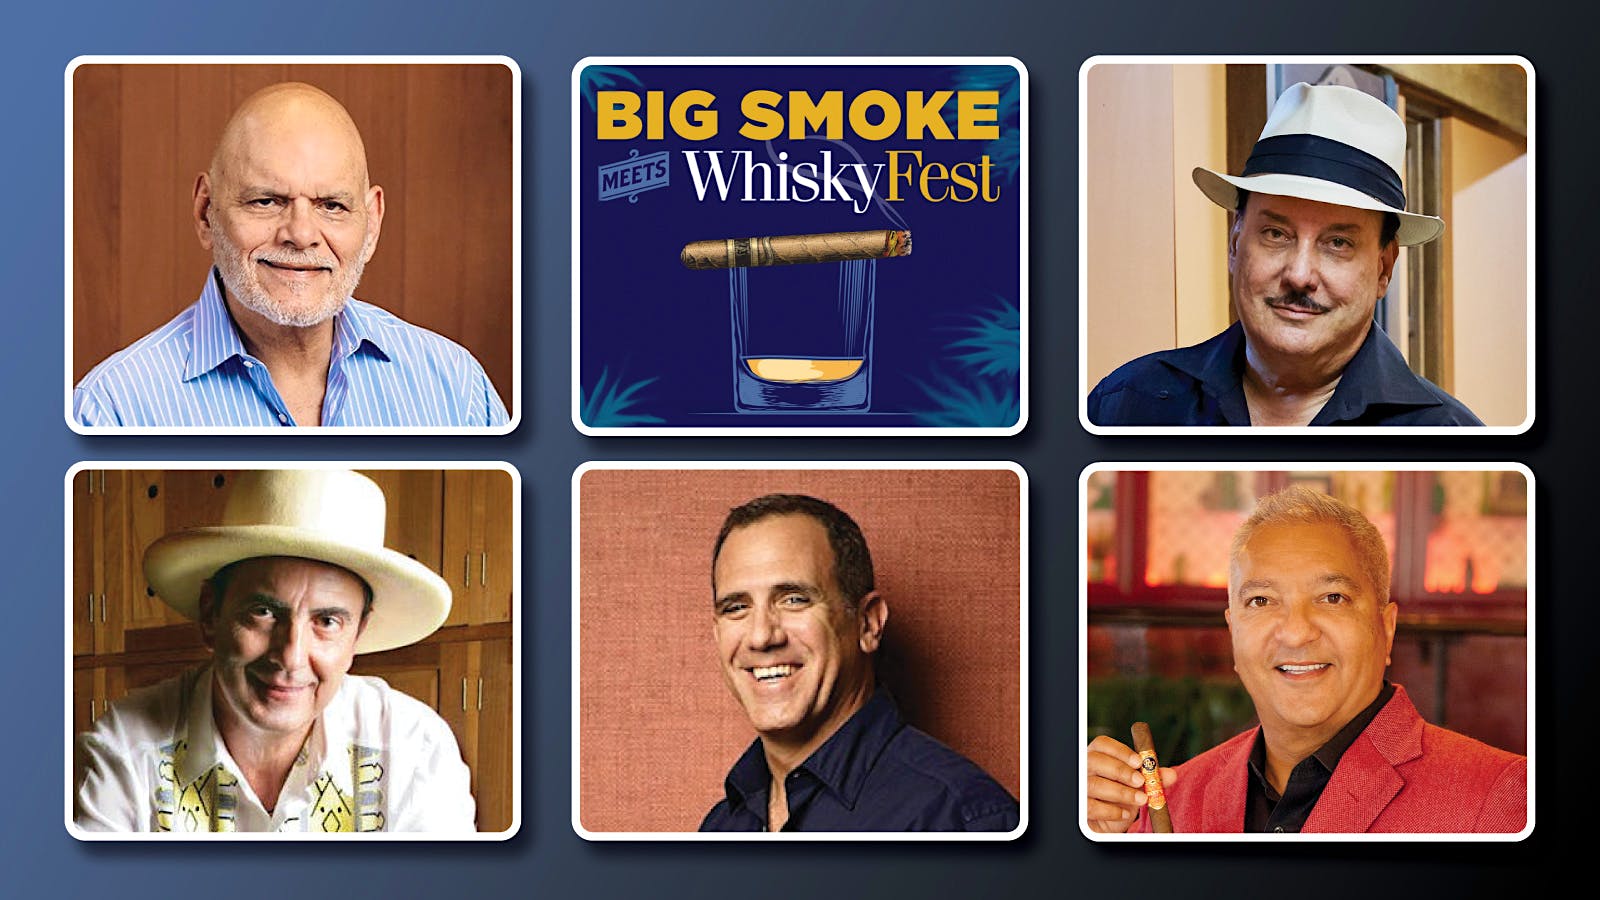 big-smoke-meets-whiskyfest-seminars-|-cigar-aficionado